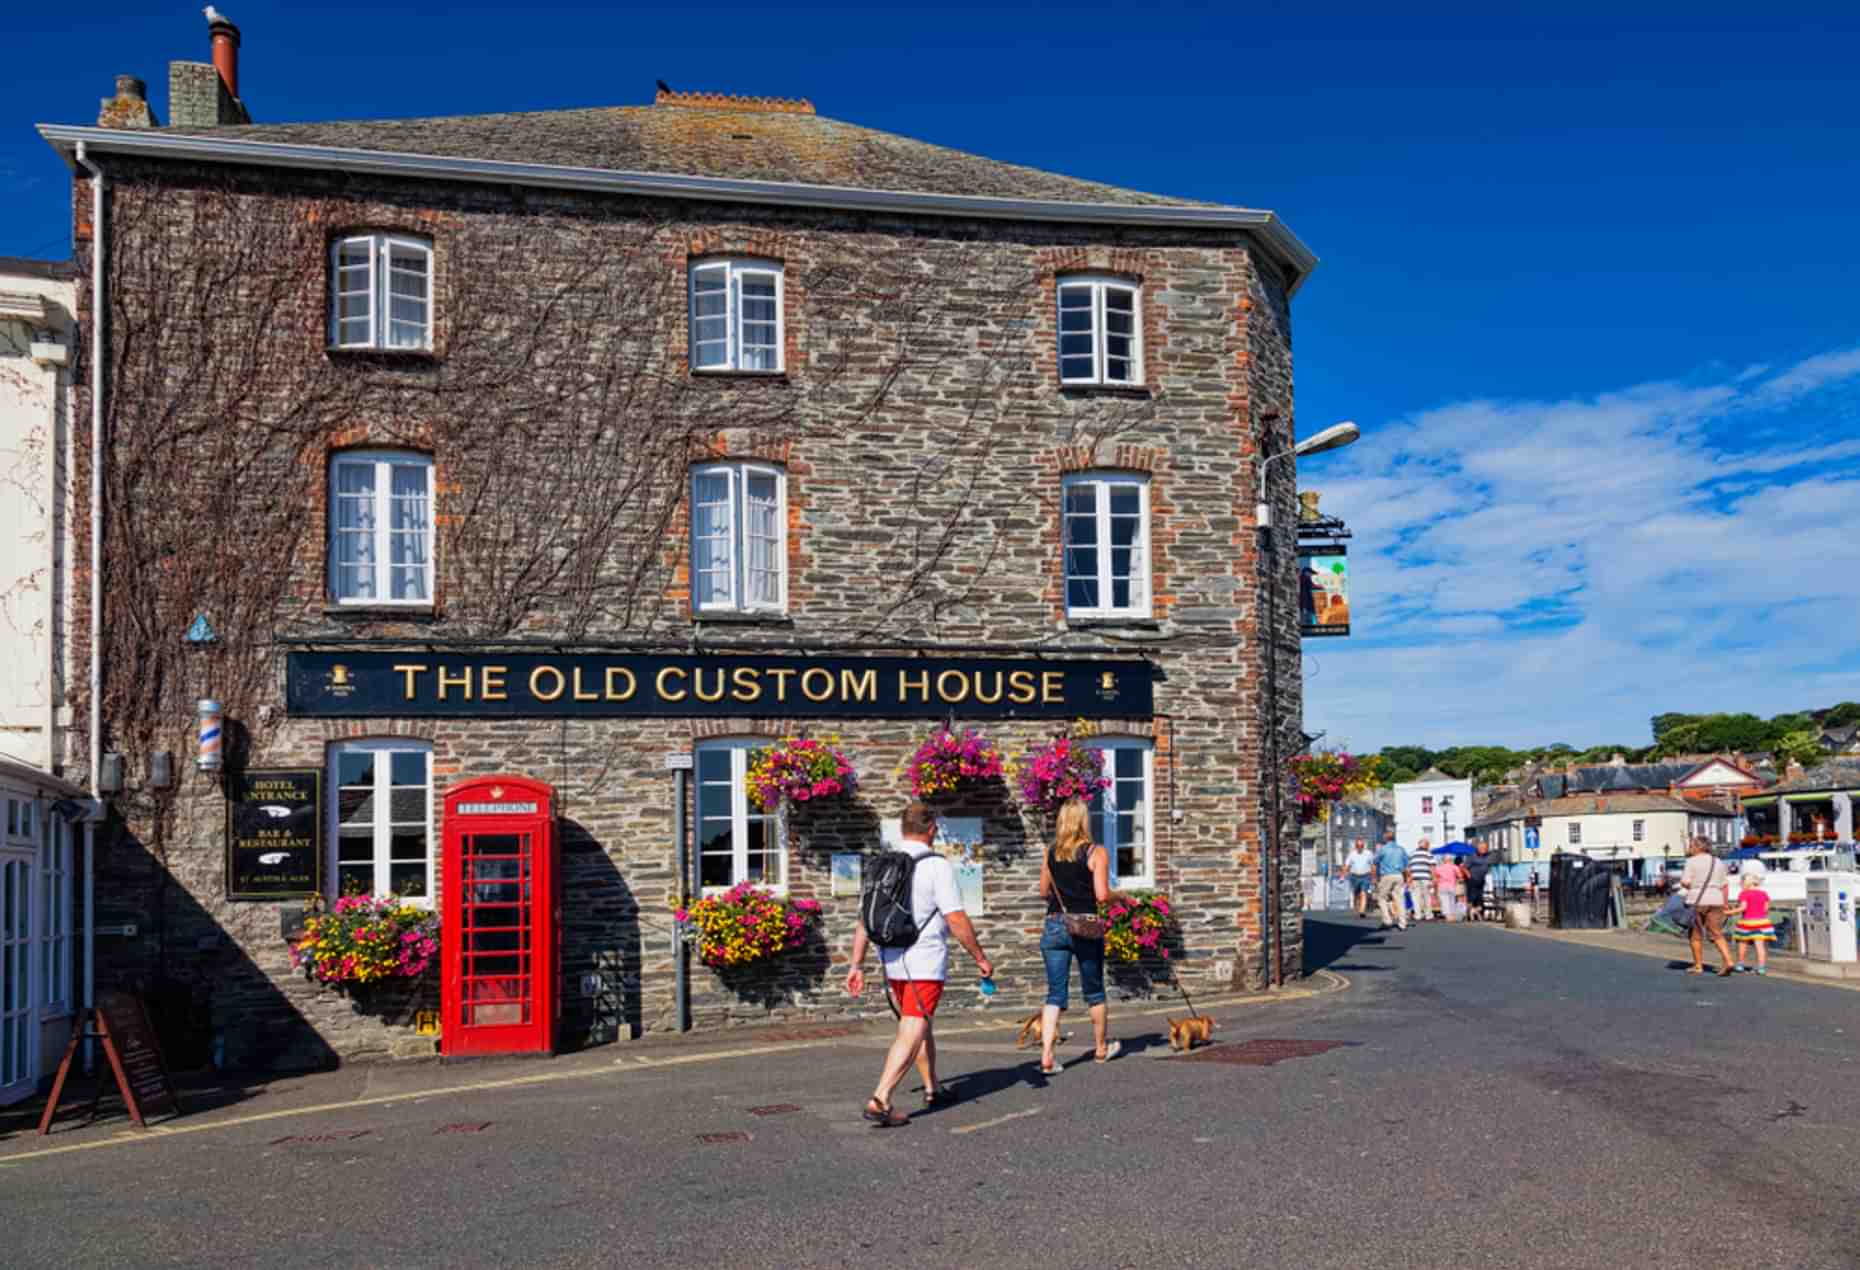 The Old Custom House